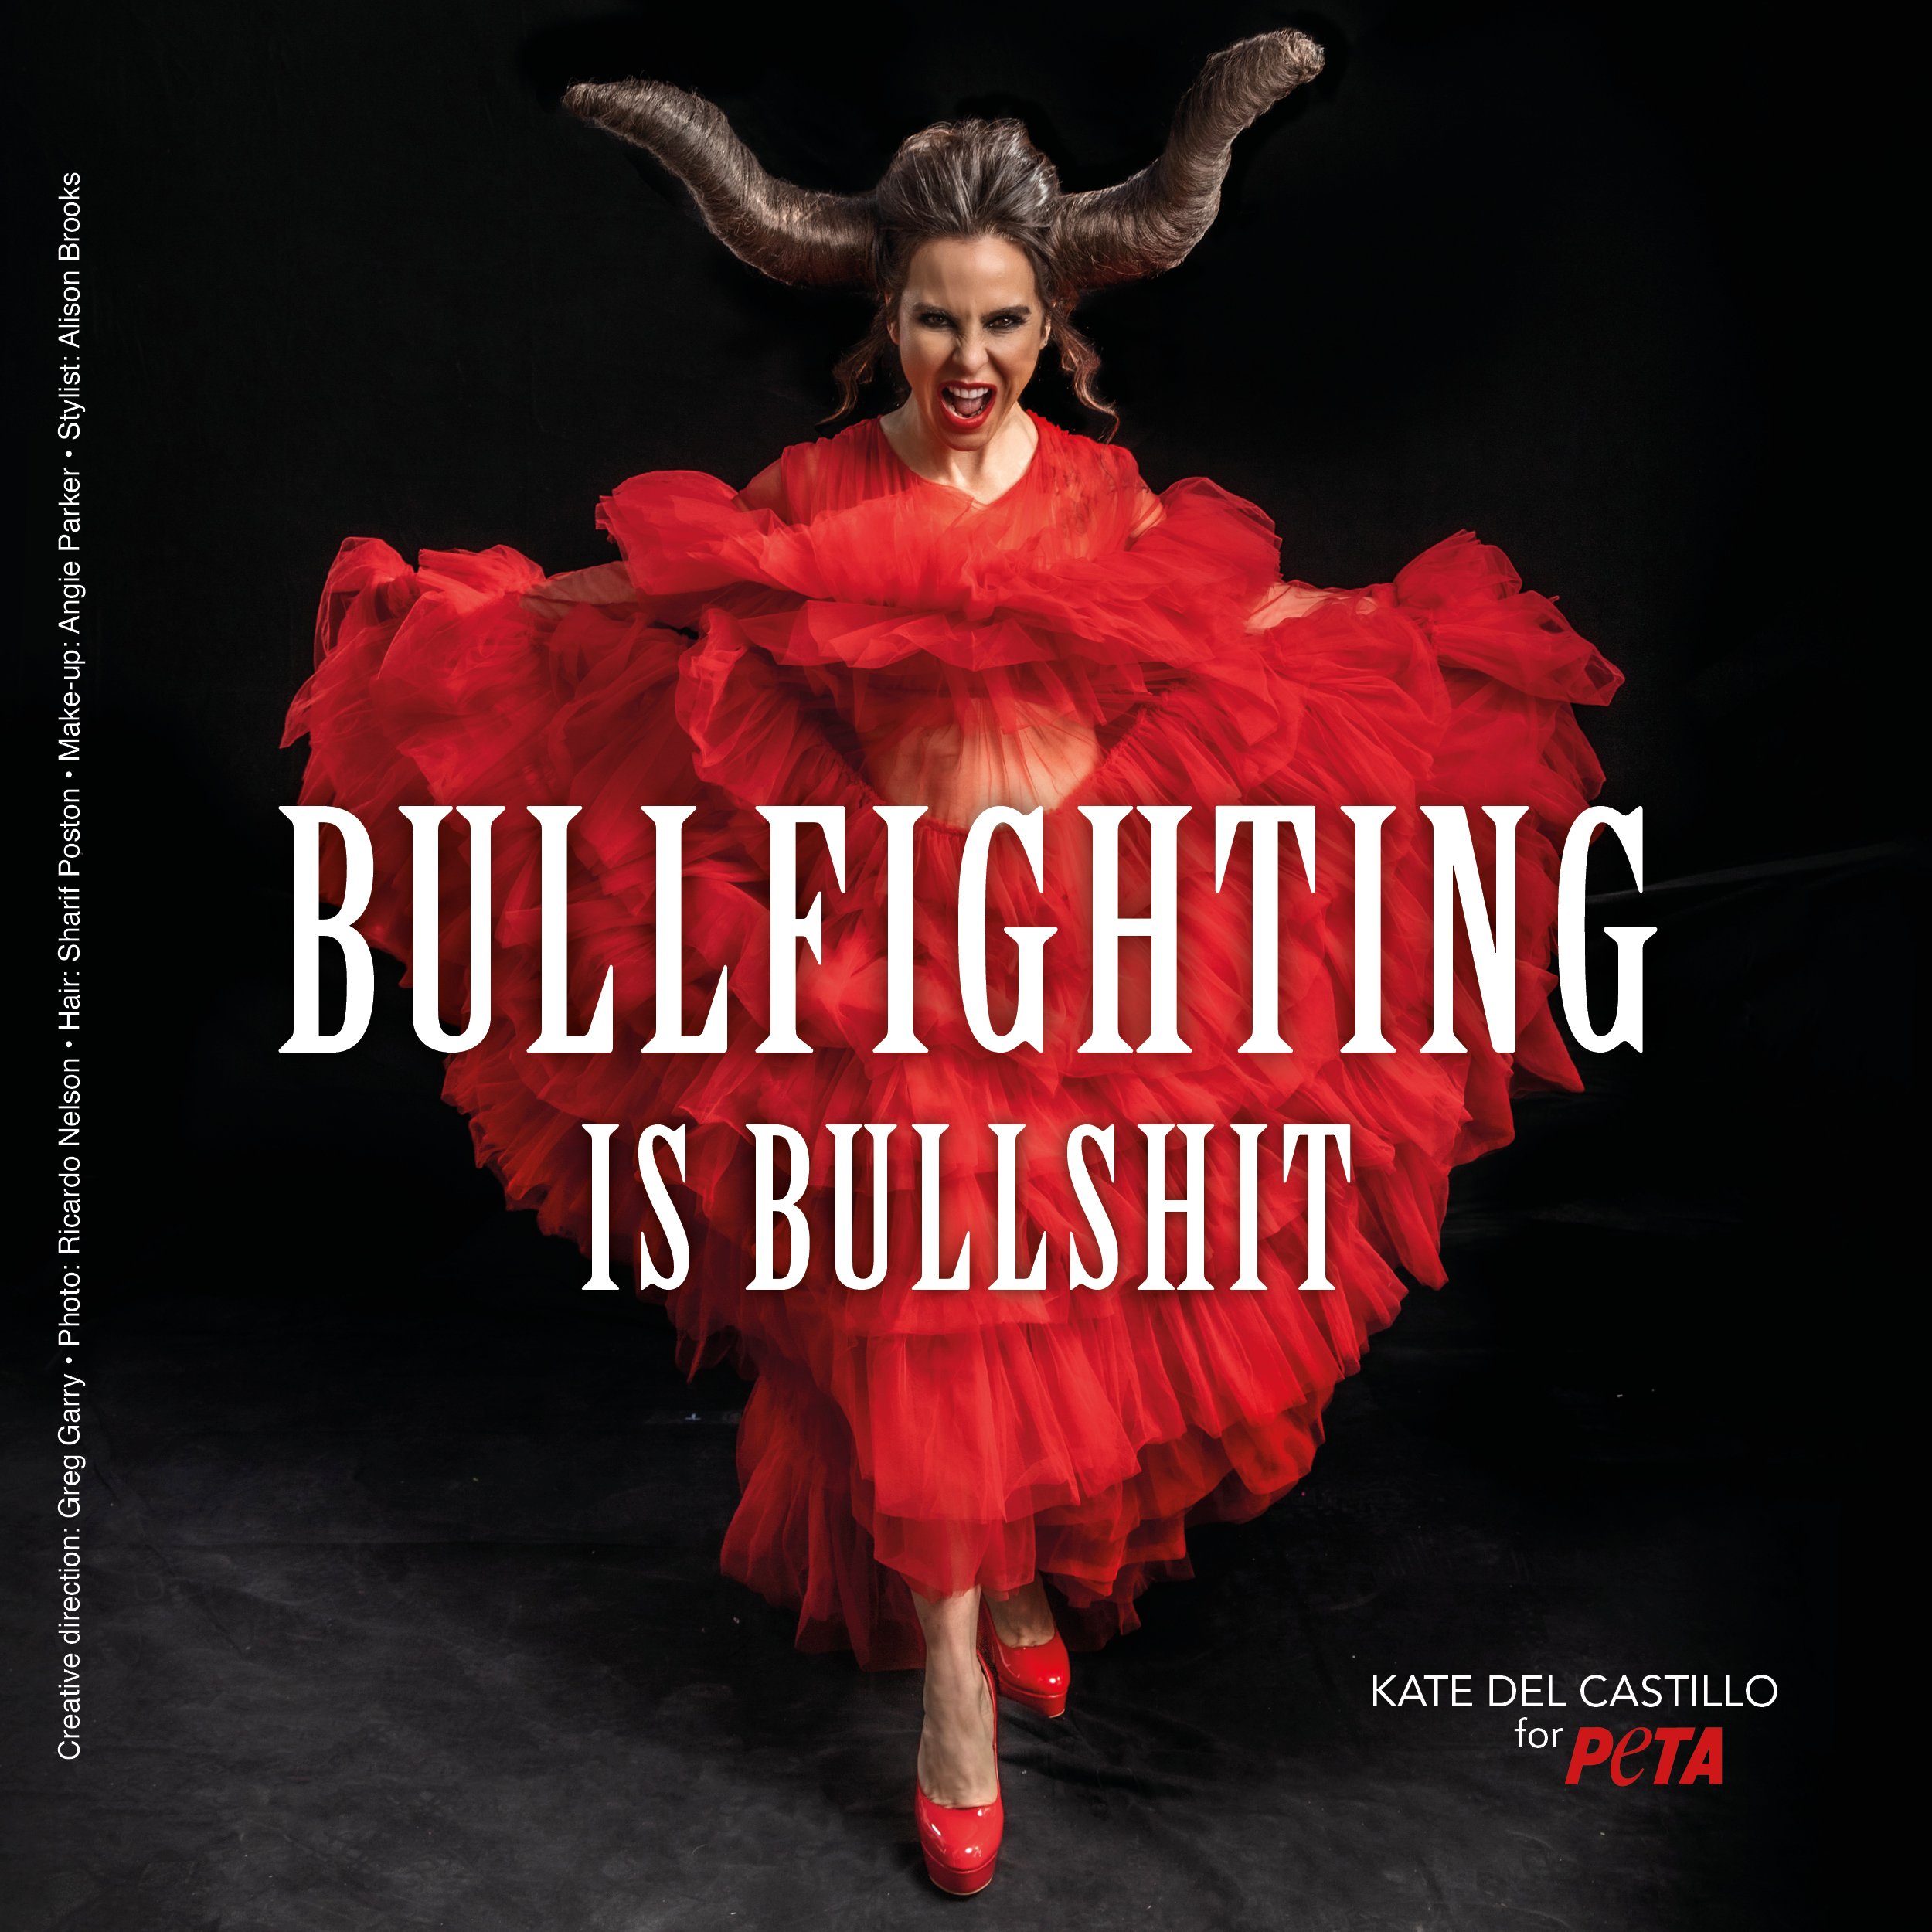 kate del castillo anti-bullfighting ad